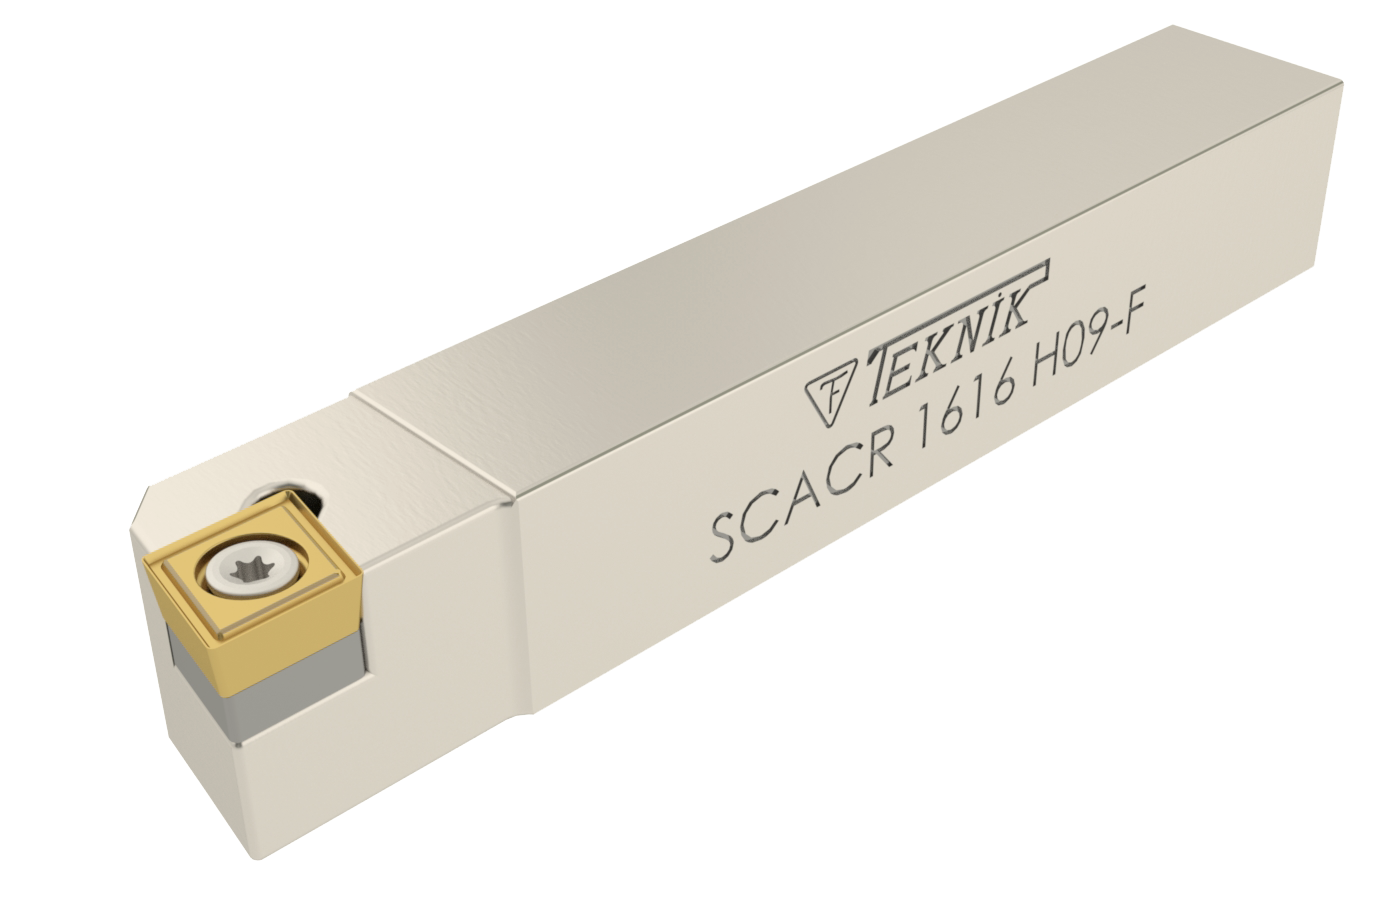 Klemmhalter SCAC auf durchsichtigem Hintergrund. Mit einer Wendeplatte des Typs CCMT. Auf der Seite des Werkzeugs befinden sich das Logo des Herstellers und der Artikelcode.